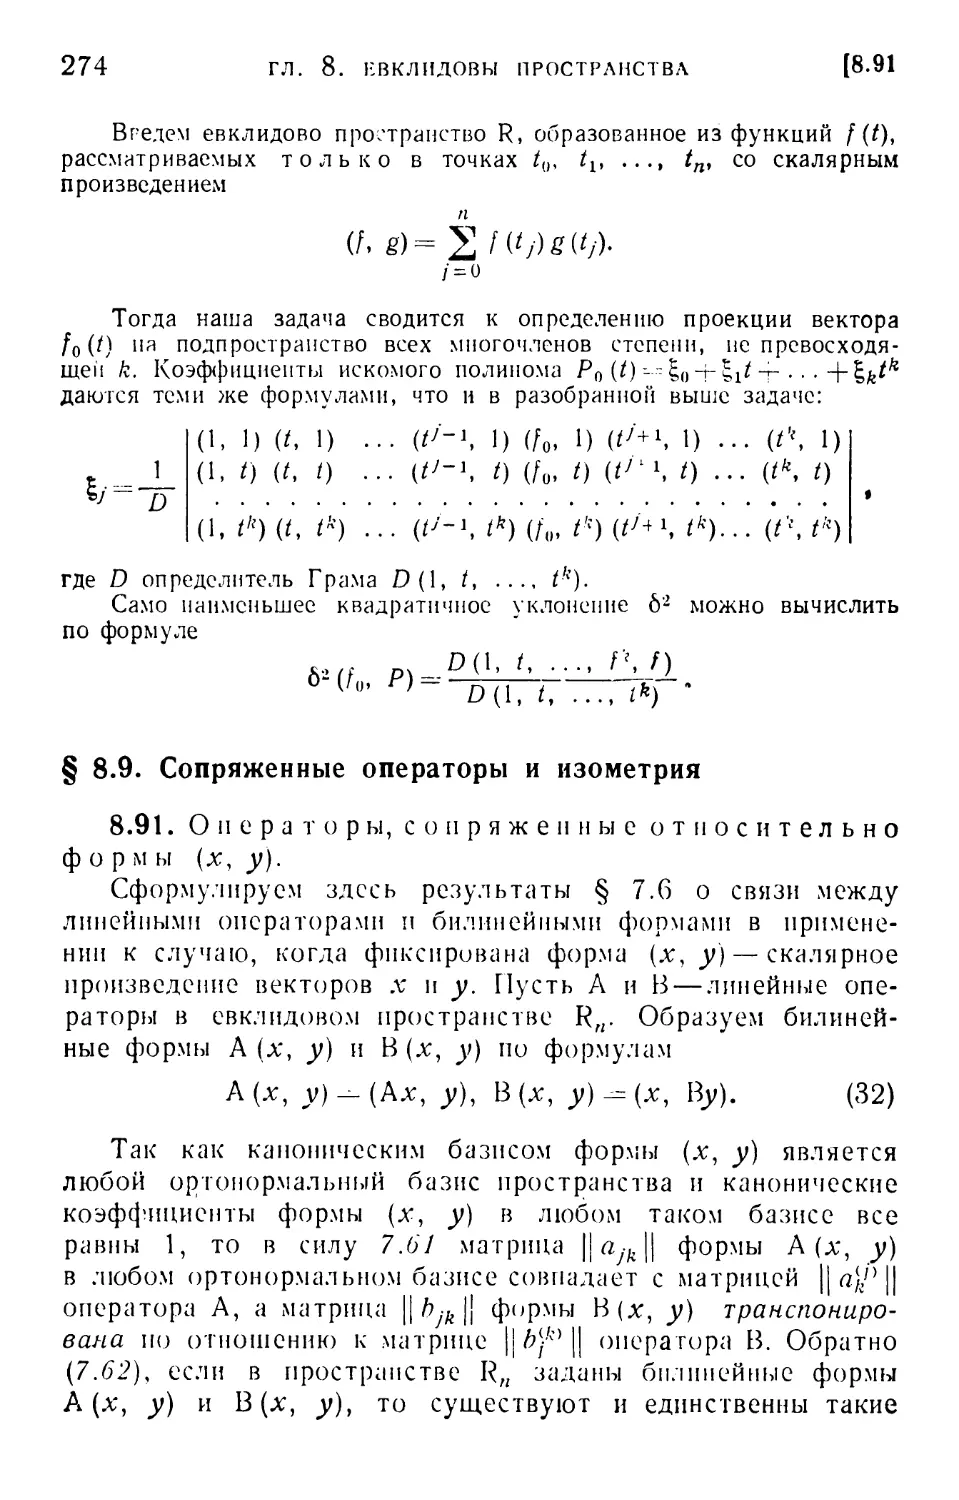 § 8.9. Сопряженные операторы и изометрия